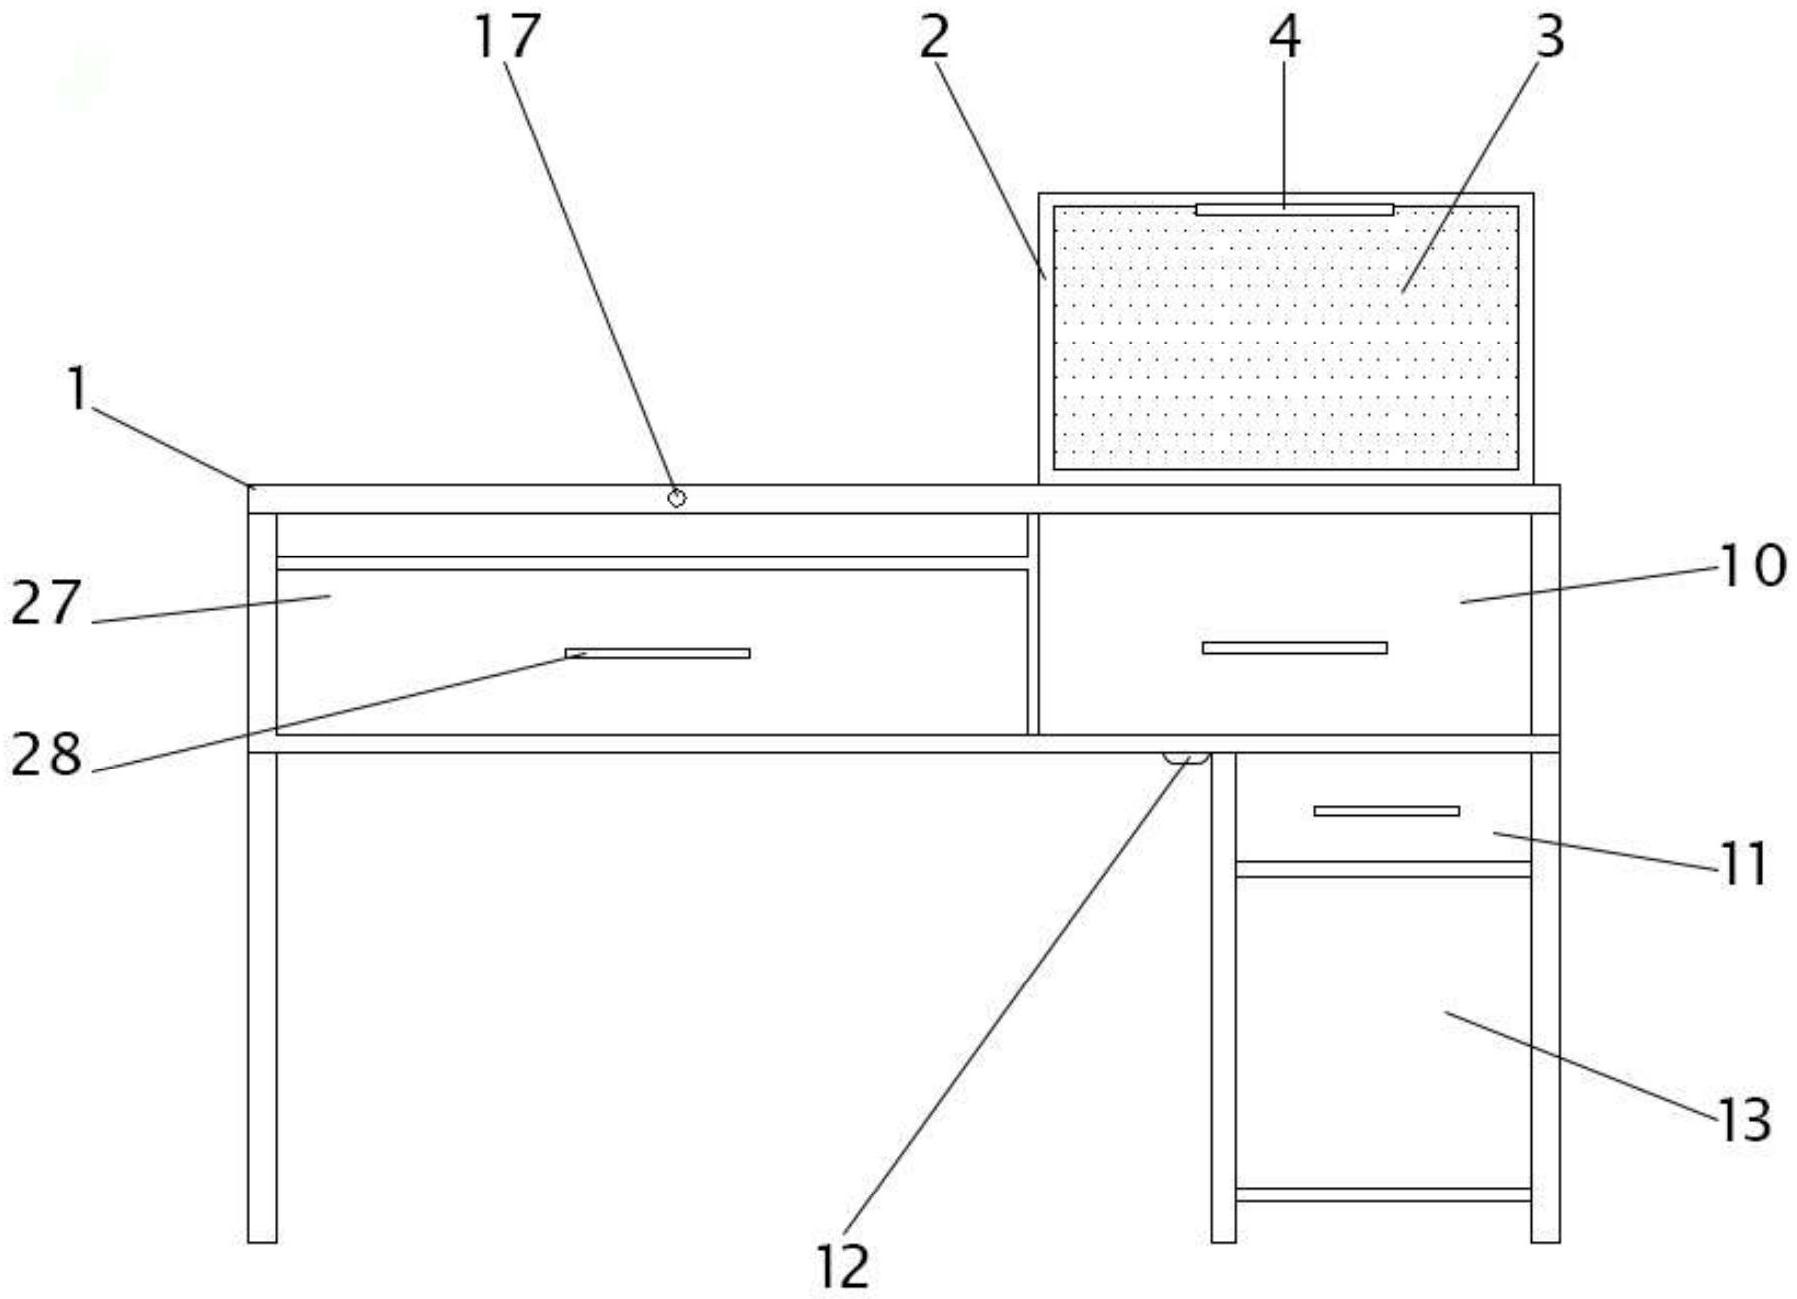 一种节约空间的实用电脑桌专利图